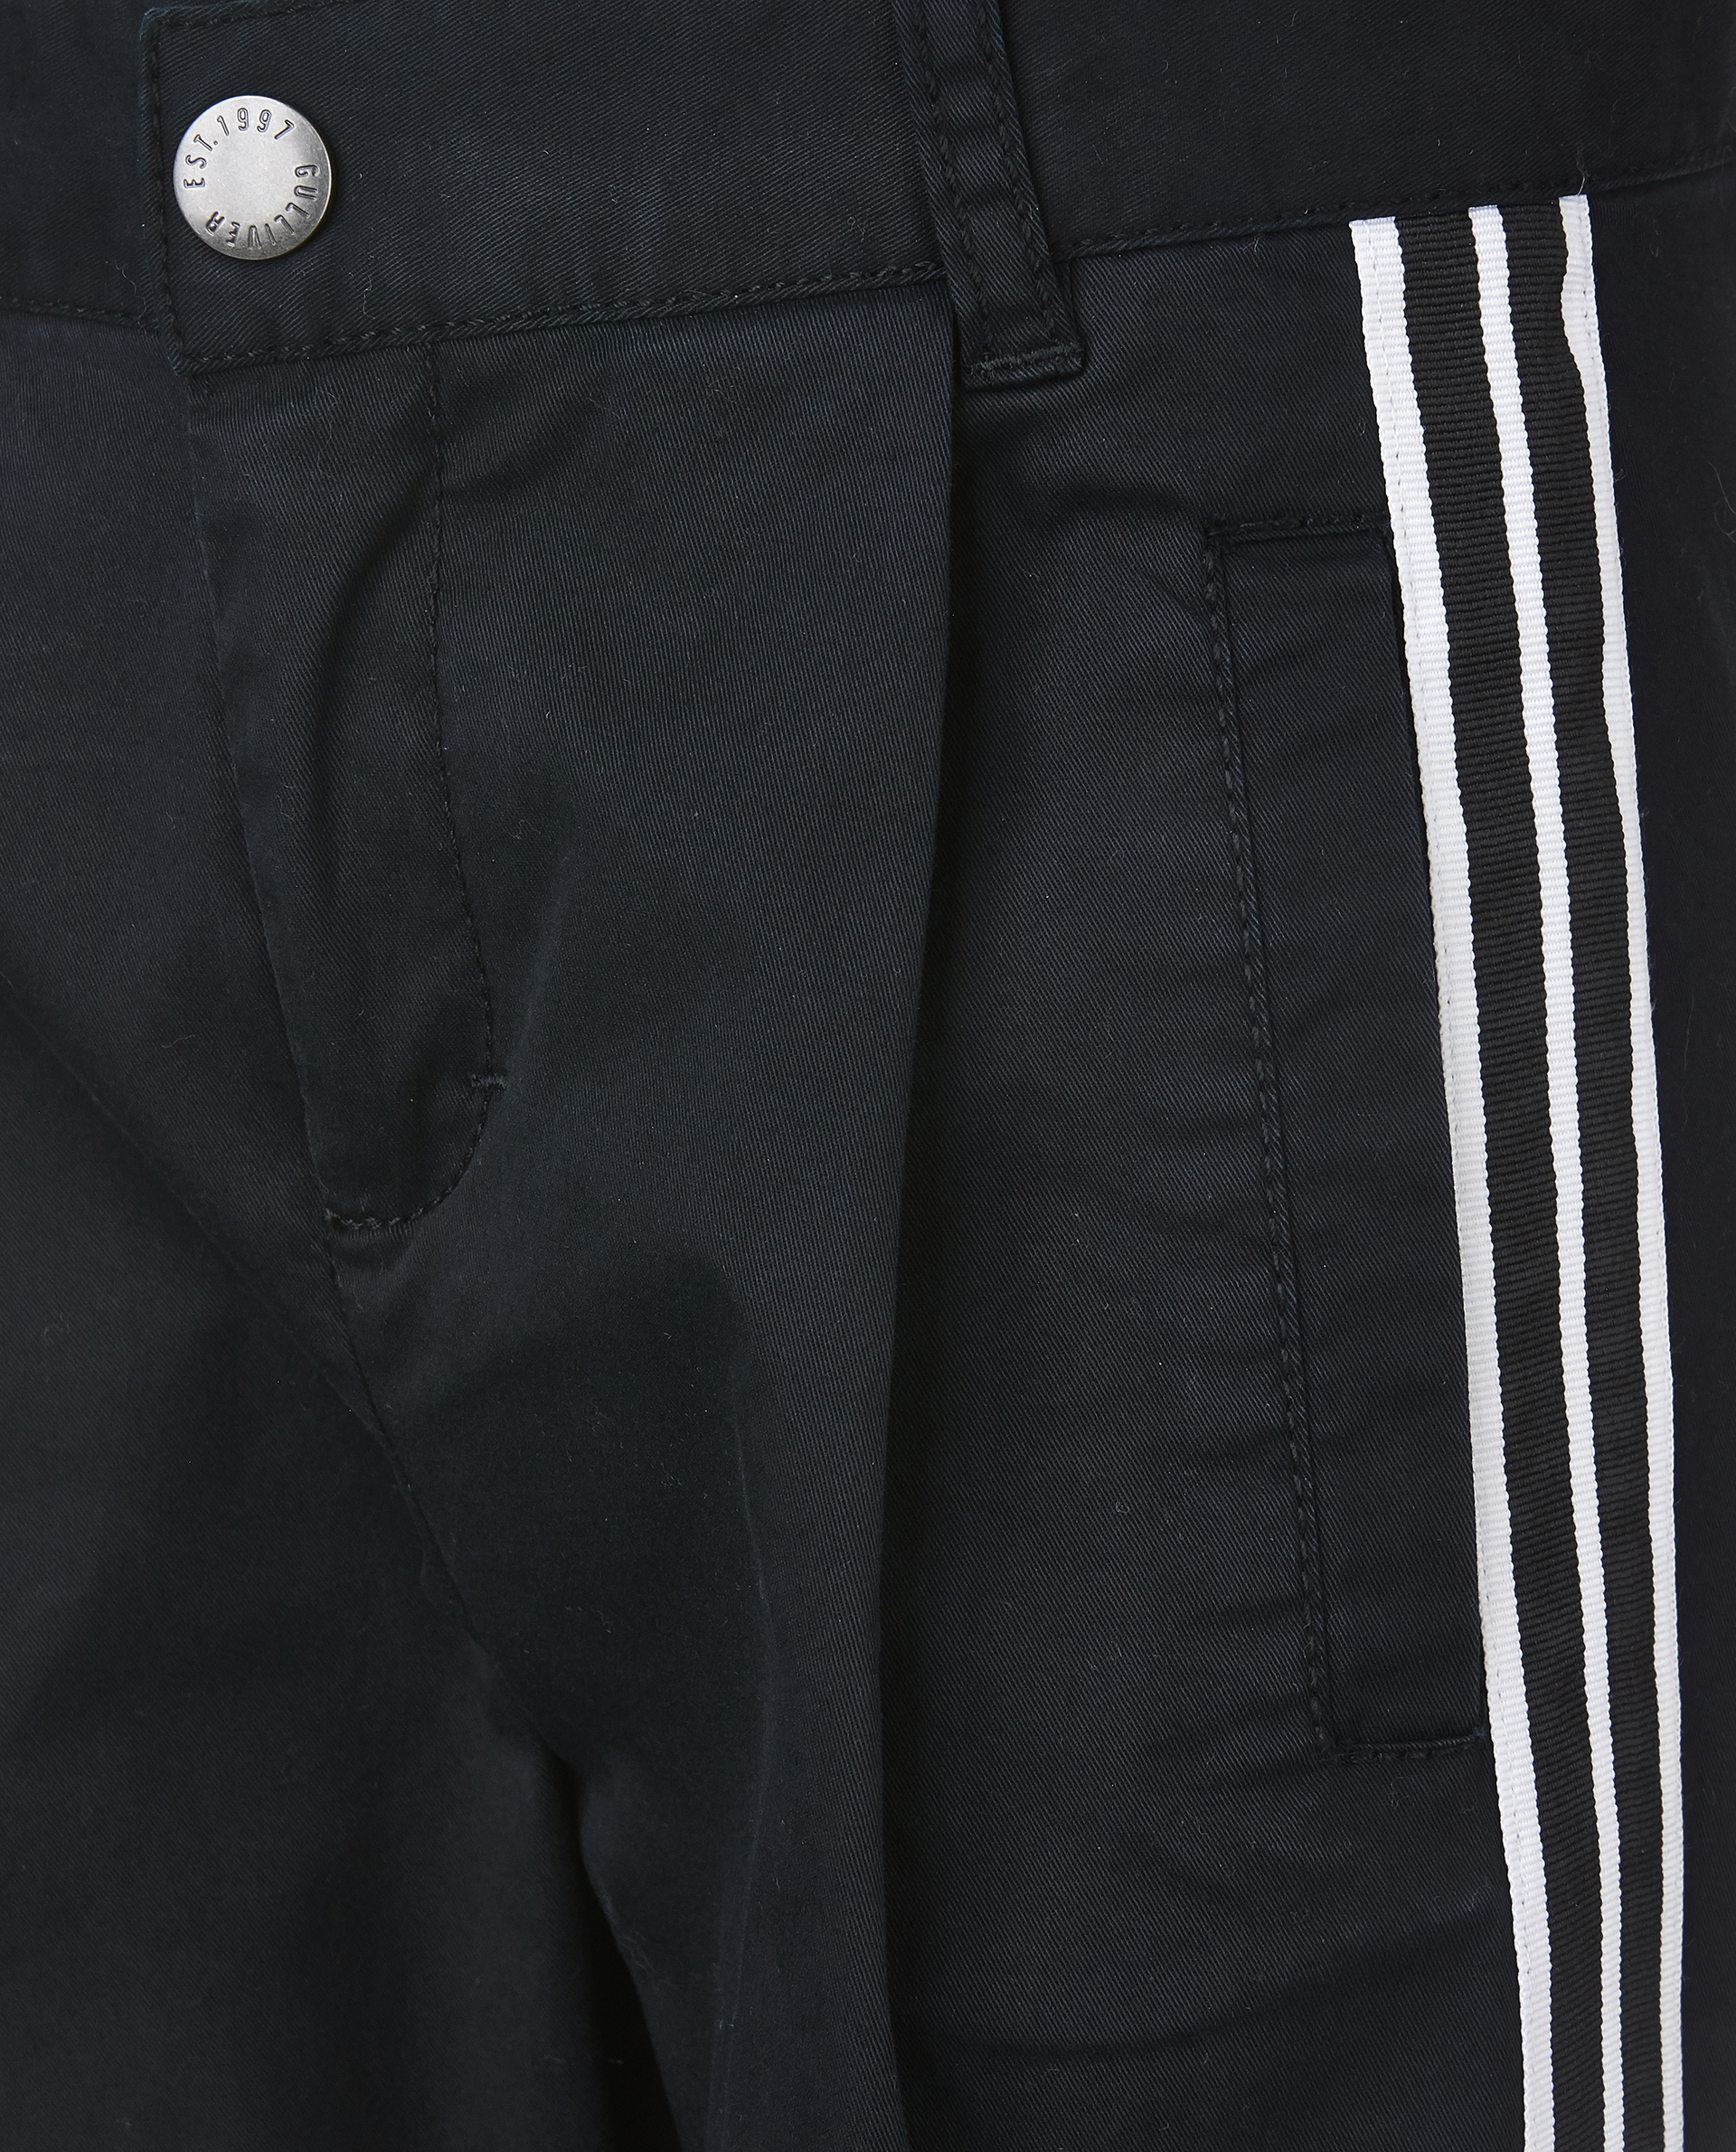 Черные брюки с лампасами Gulliver 11905BMC6301, размер 98, цвет черный - фото 4